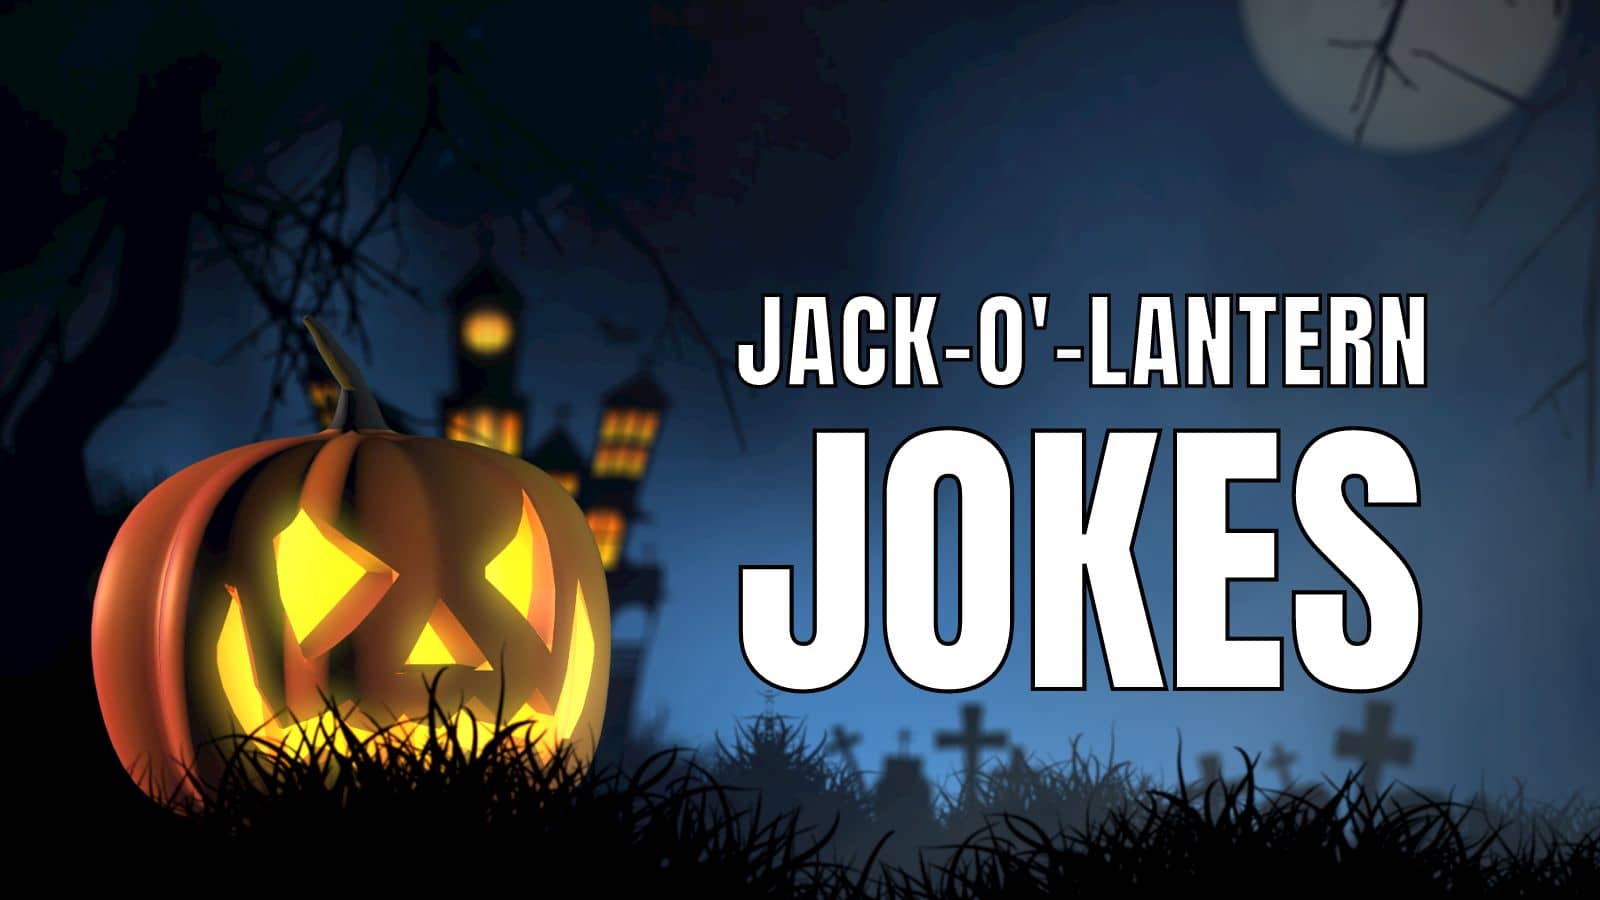 Funny Jack-O-Lantern Jokes on Halloween